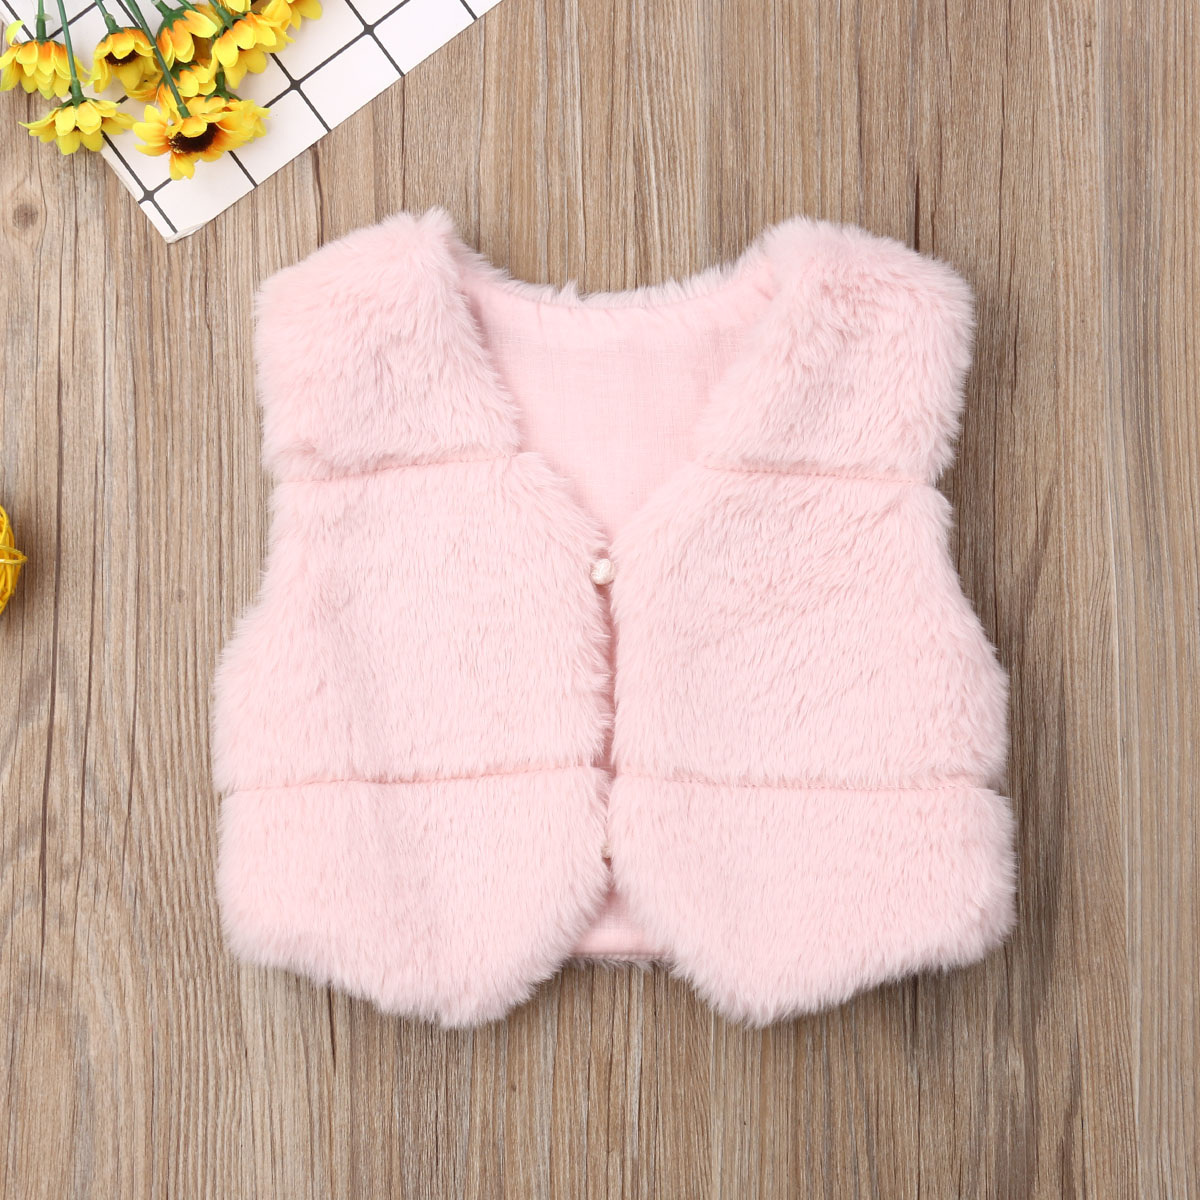 Girls Kids Winter Warm Faux Fur Vest Waistcoat Baby Girl Fashion Coat Outwear Jacket For Kid Girl 6M-3Y